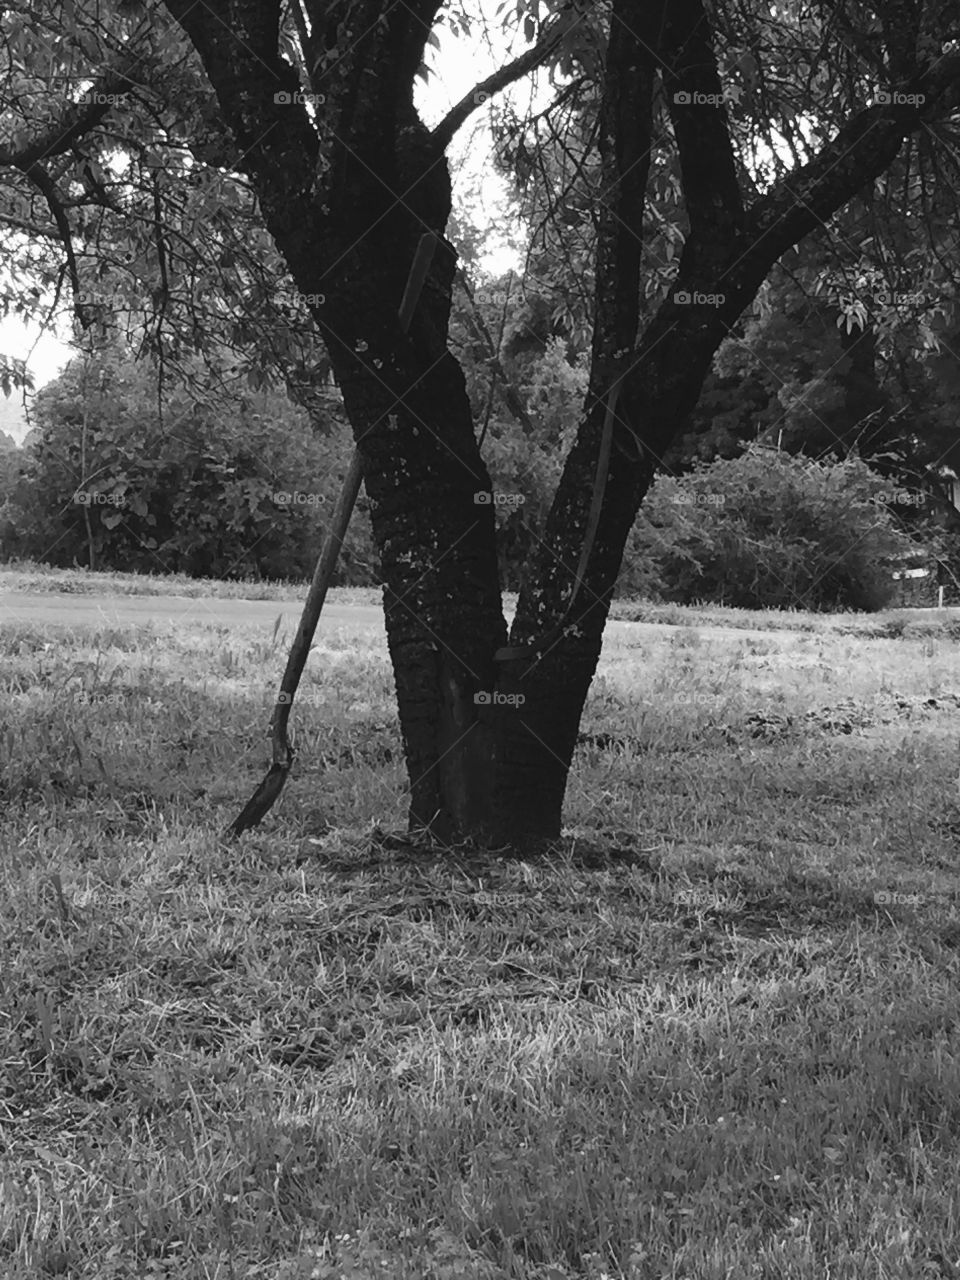 Tree, No Person, Landscape, Park, Wood